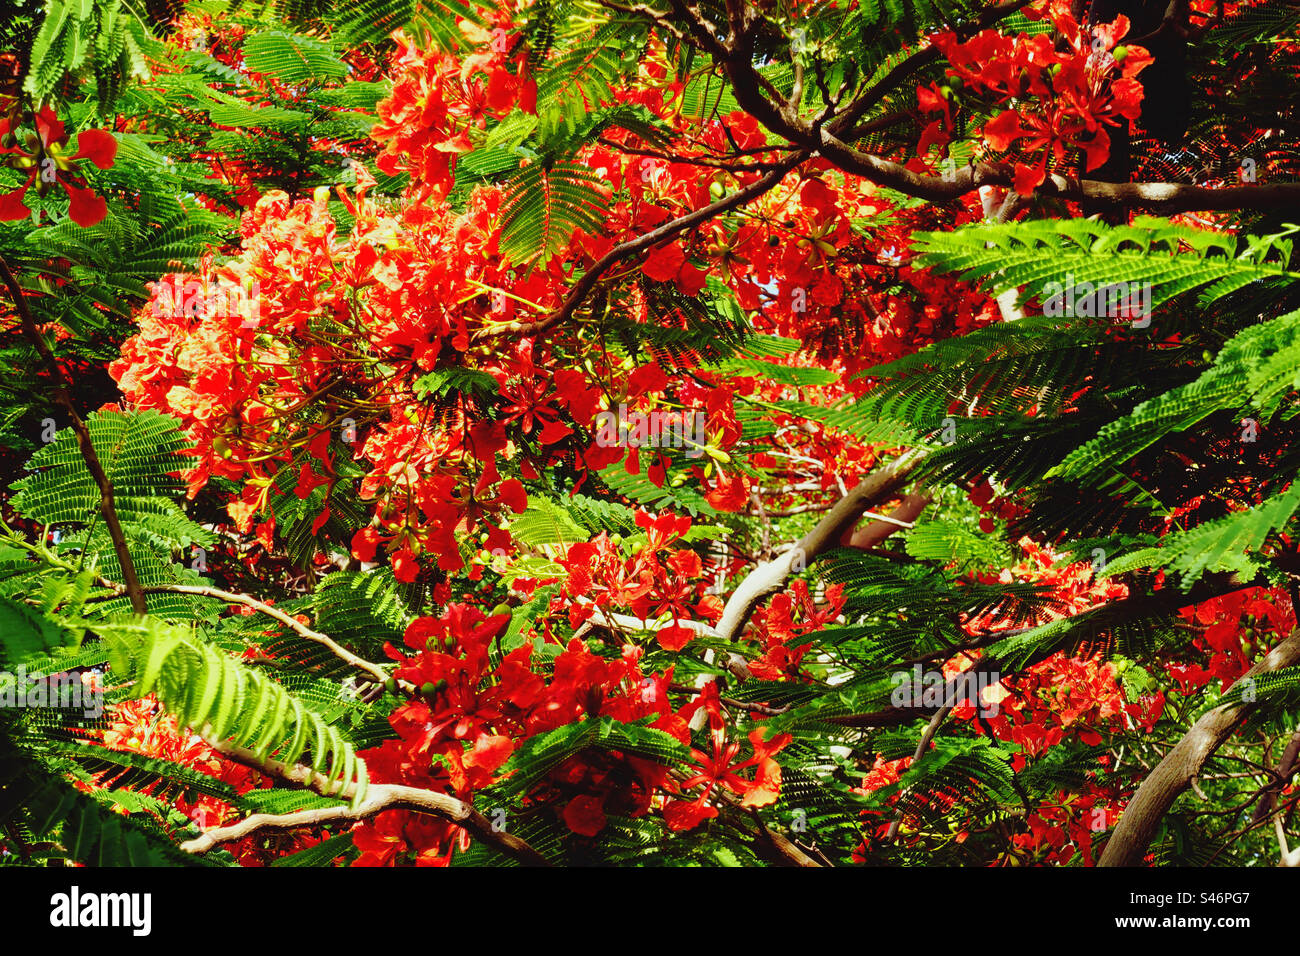 Fiori tropicali rossi contro foglie verdi Foto Stock